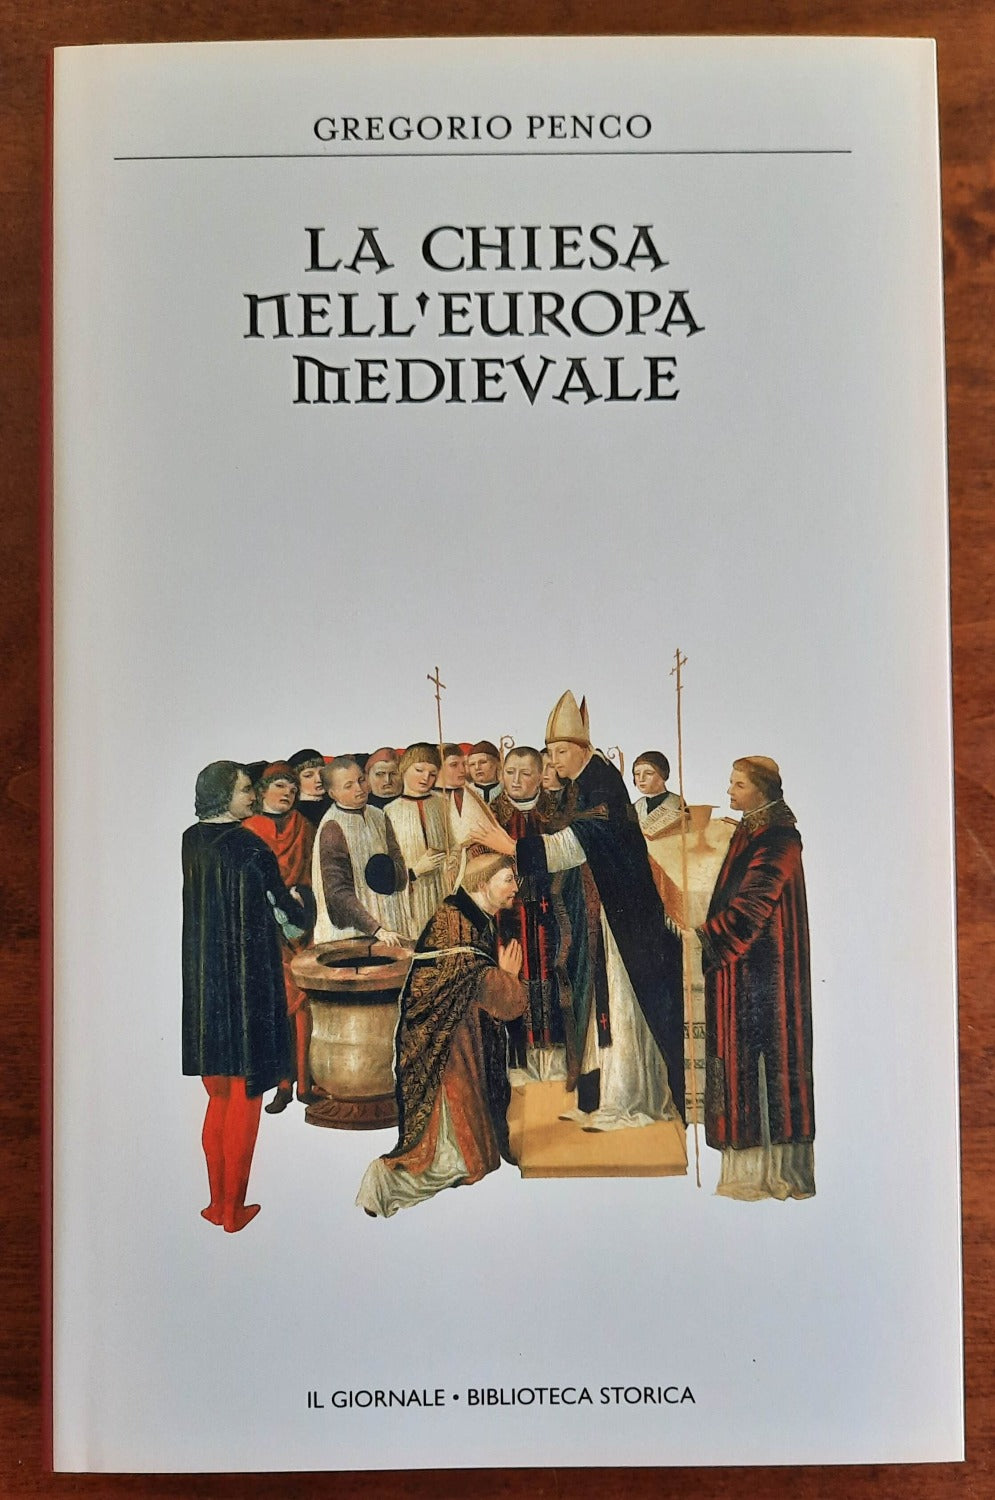 La Chiesa nell’Europa medievale